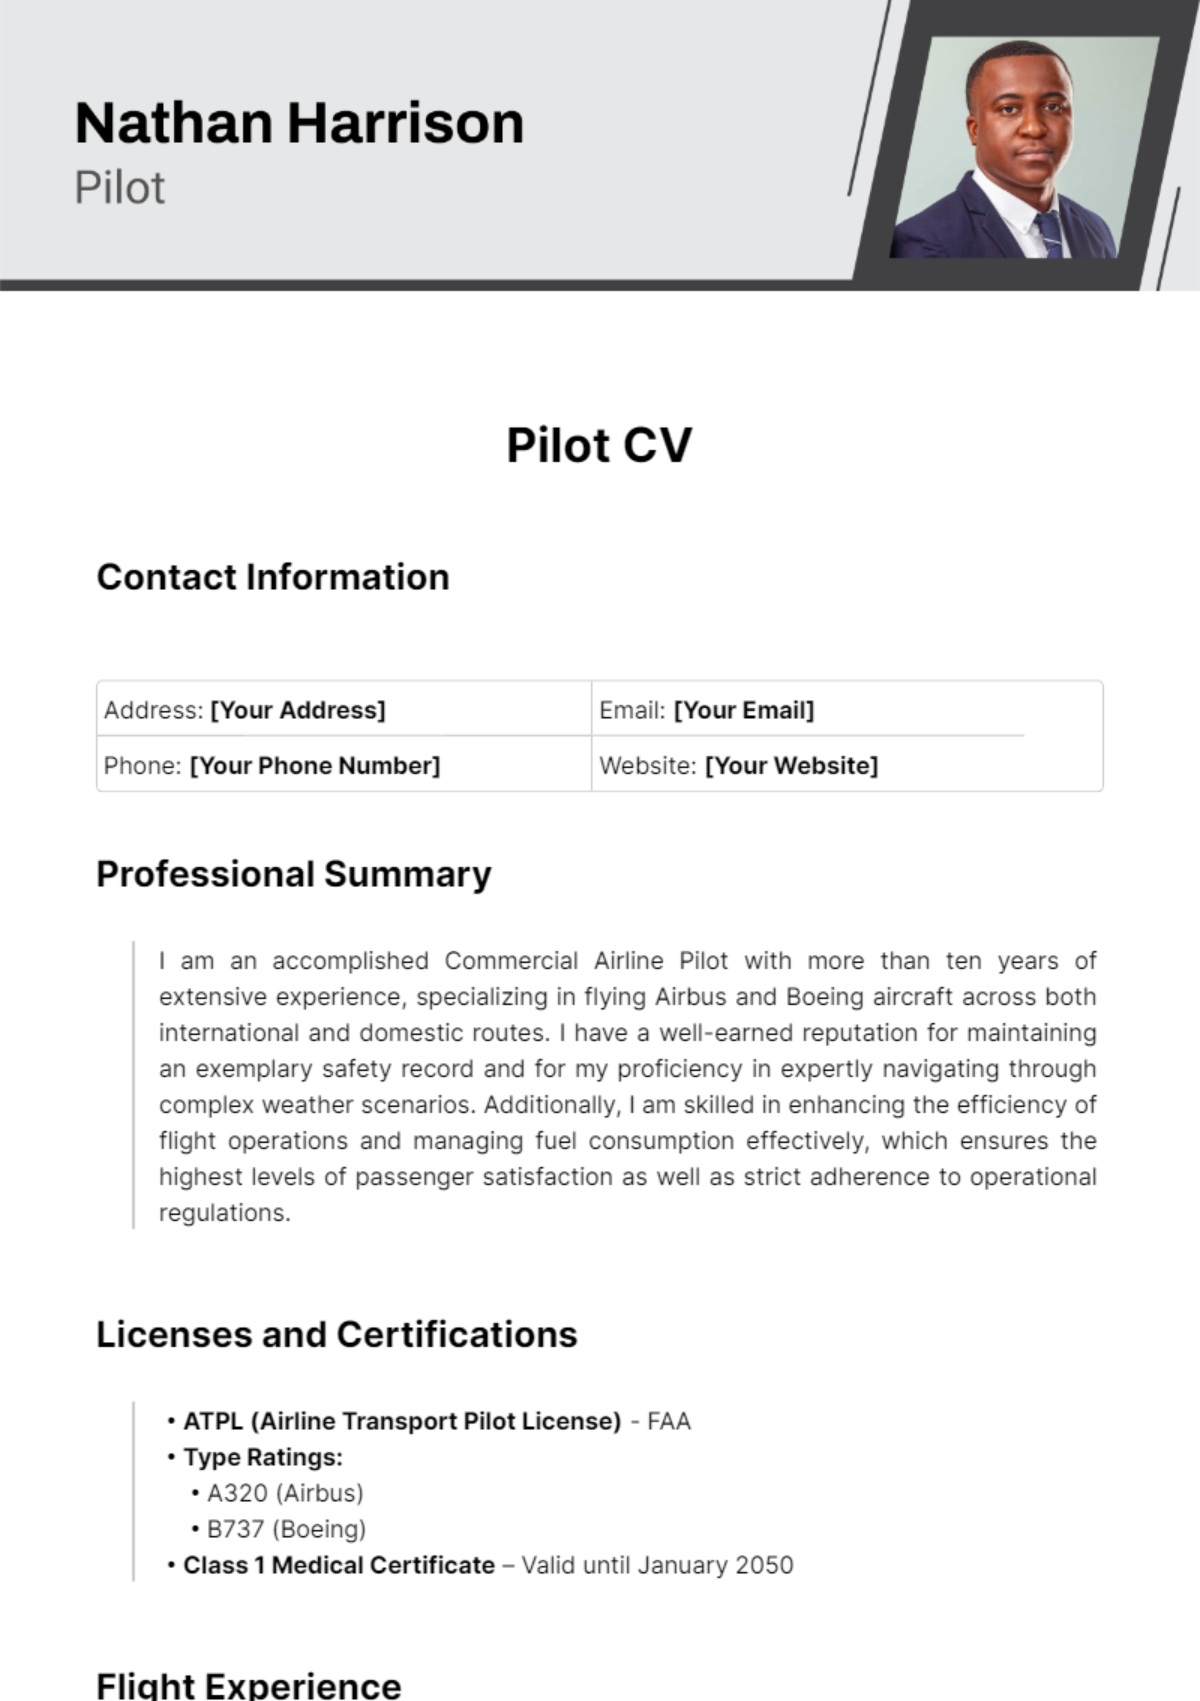 Pilot CV Template